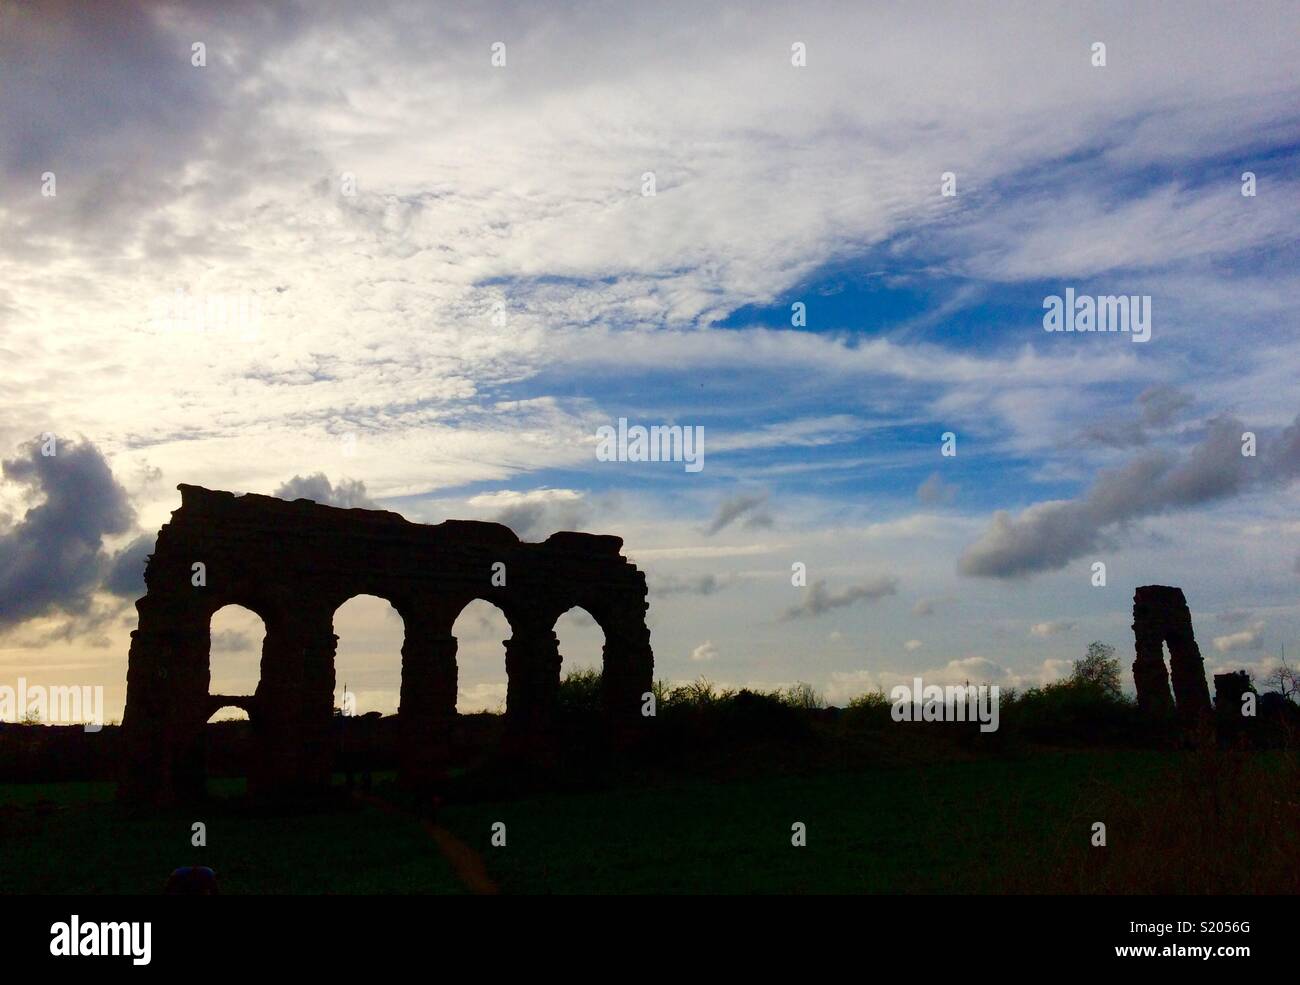 Silhouette de la Rome antique aqueducs Banque D'Images